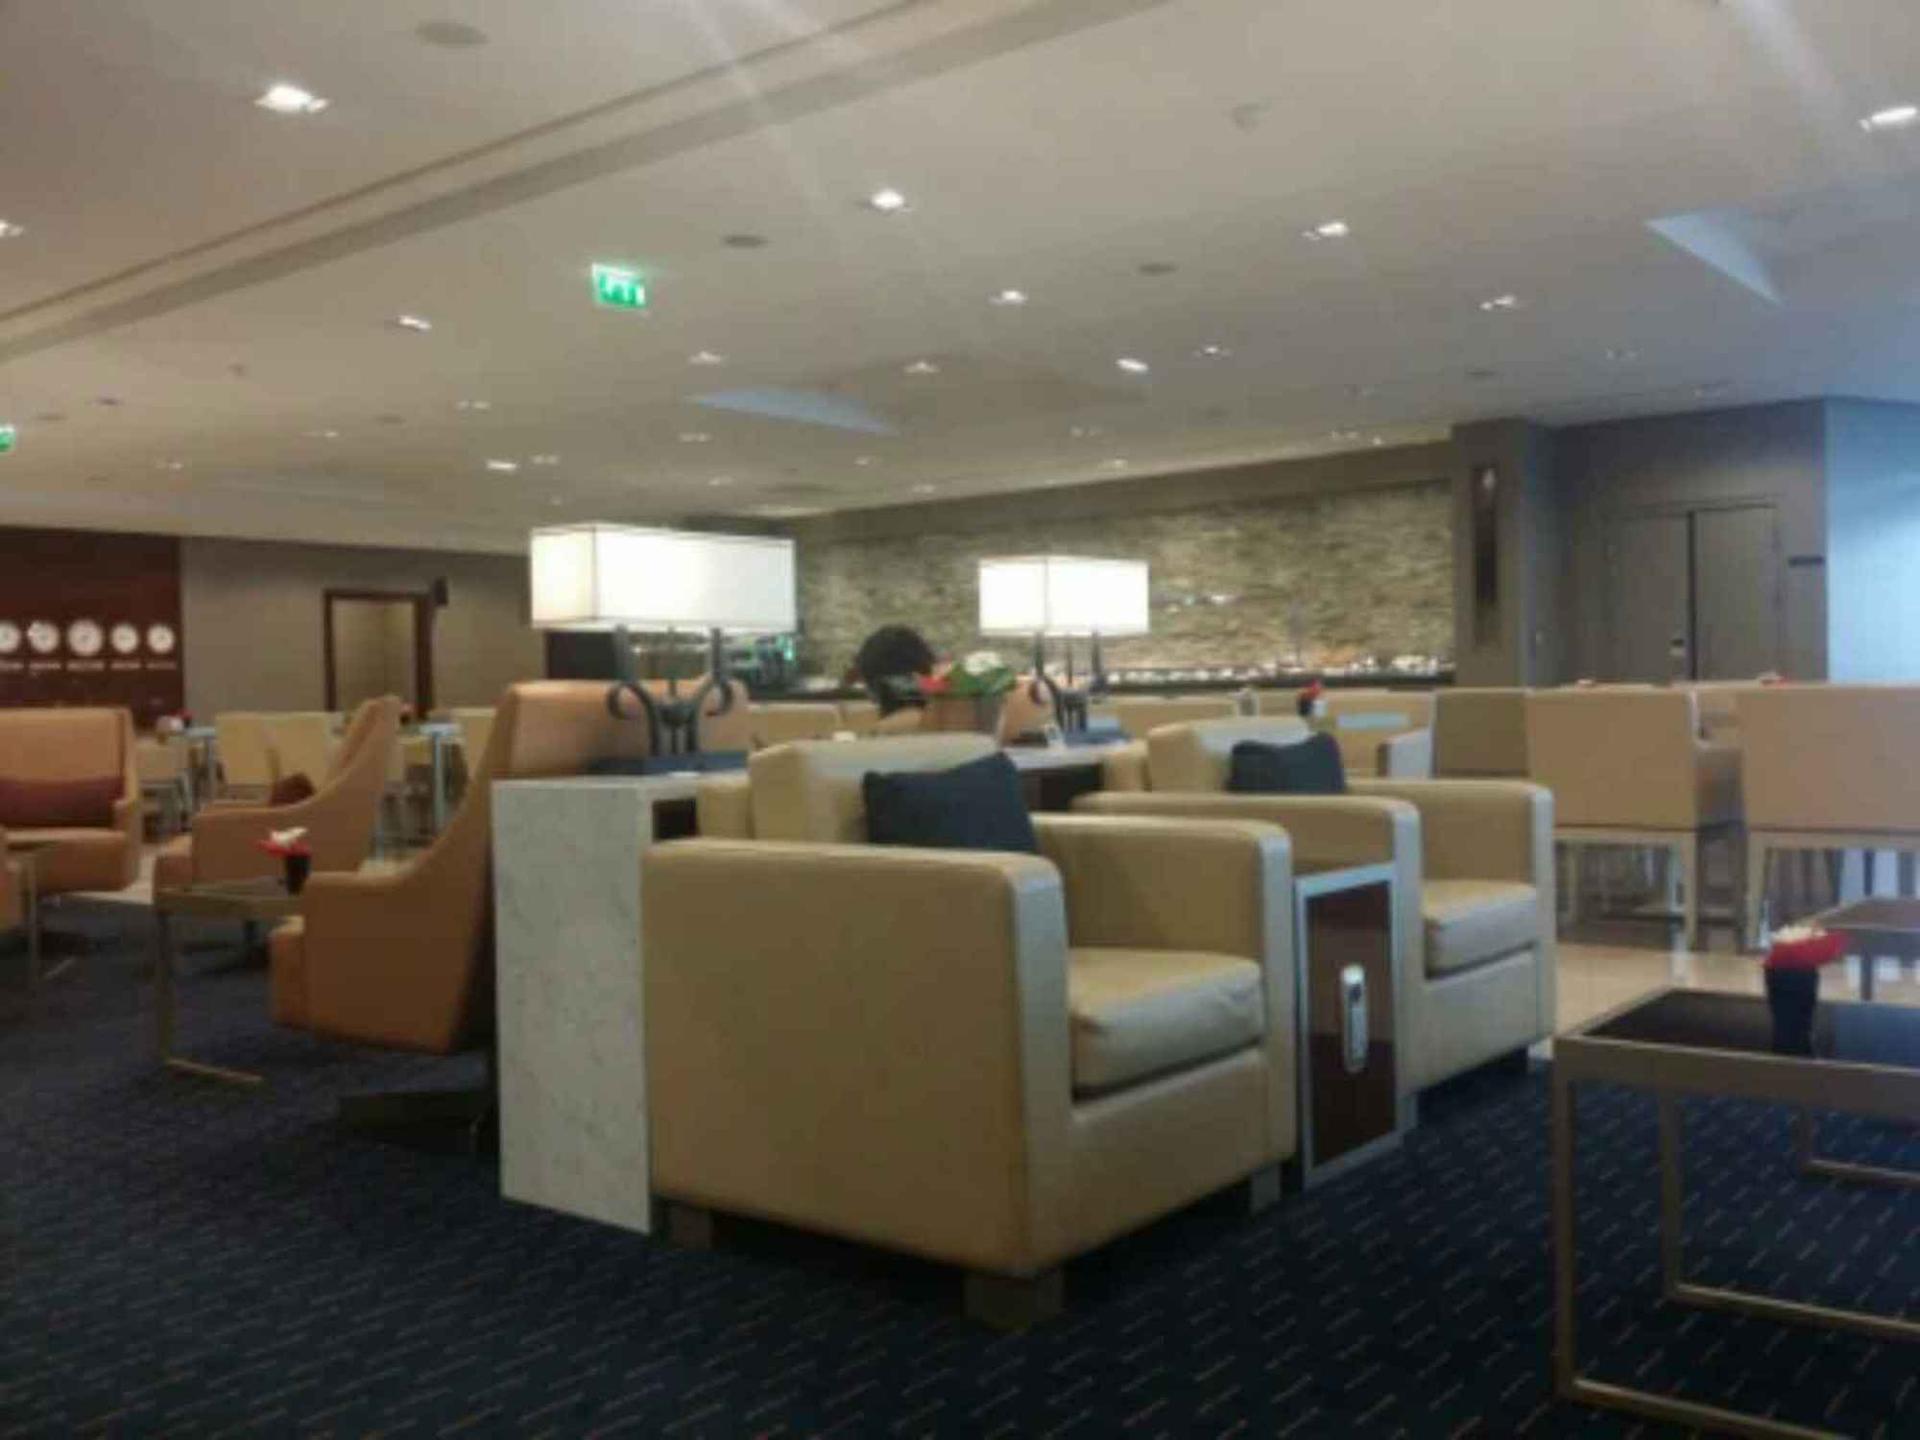 The Emirates Lounge image 7 of 9